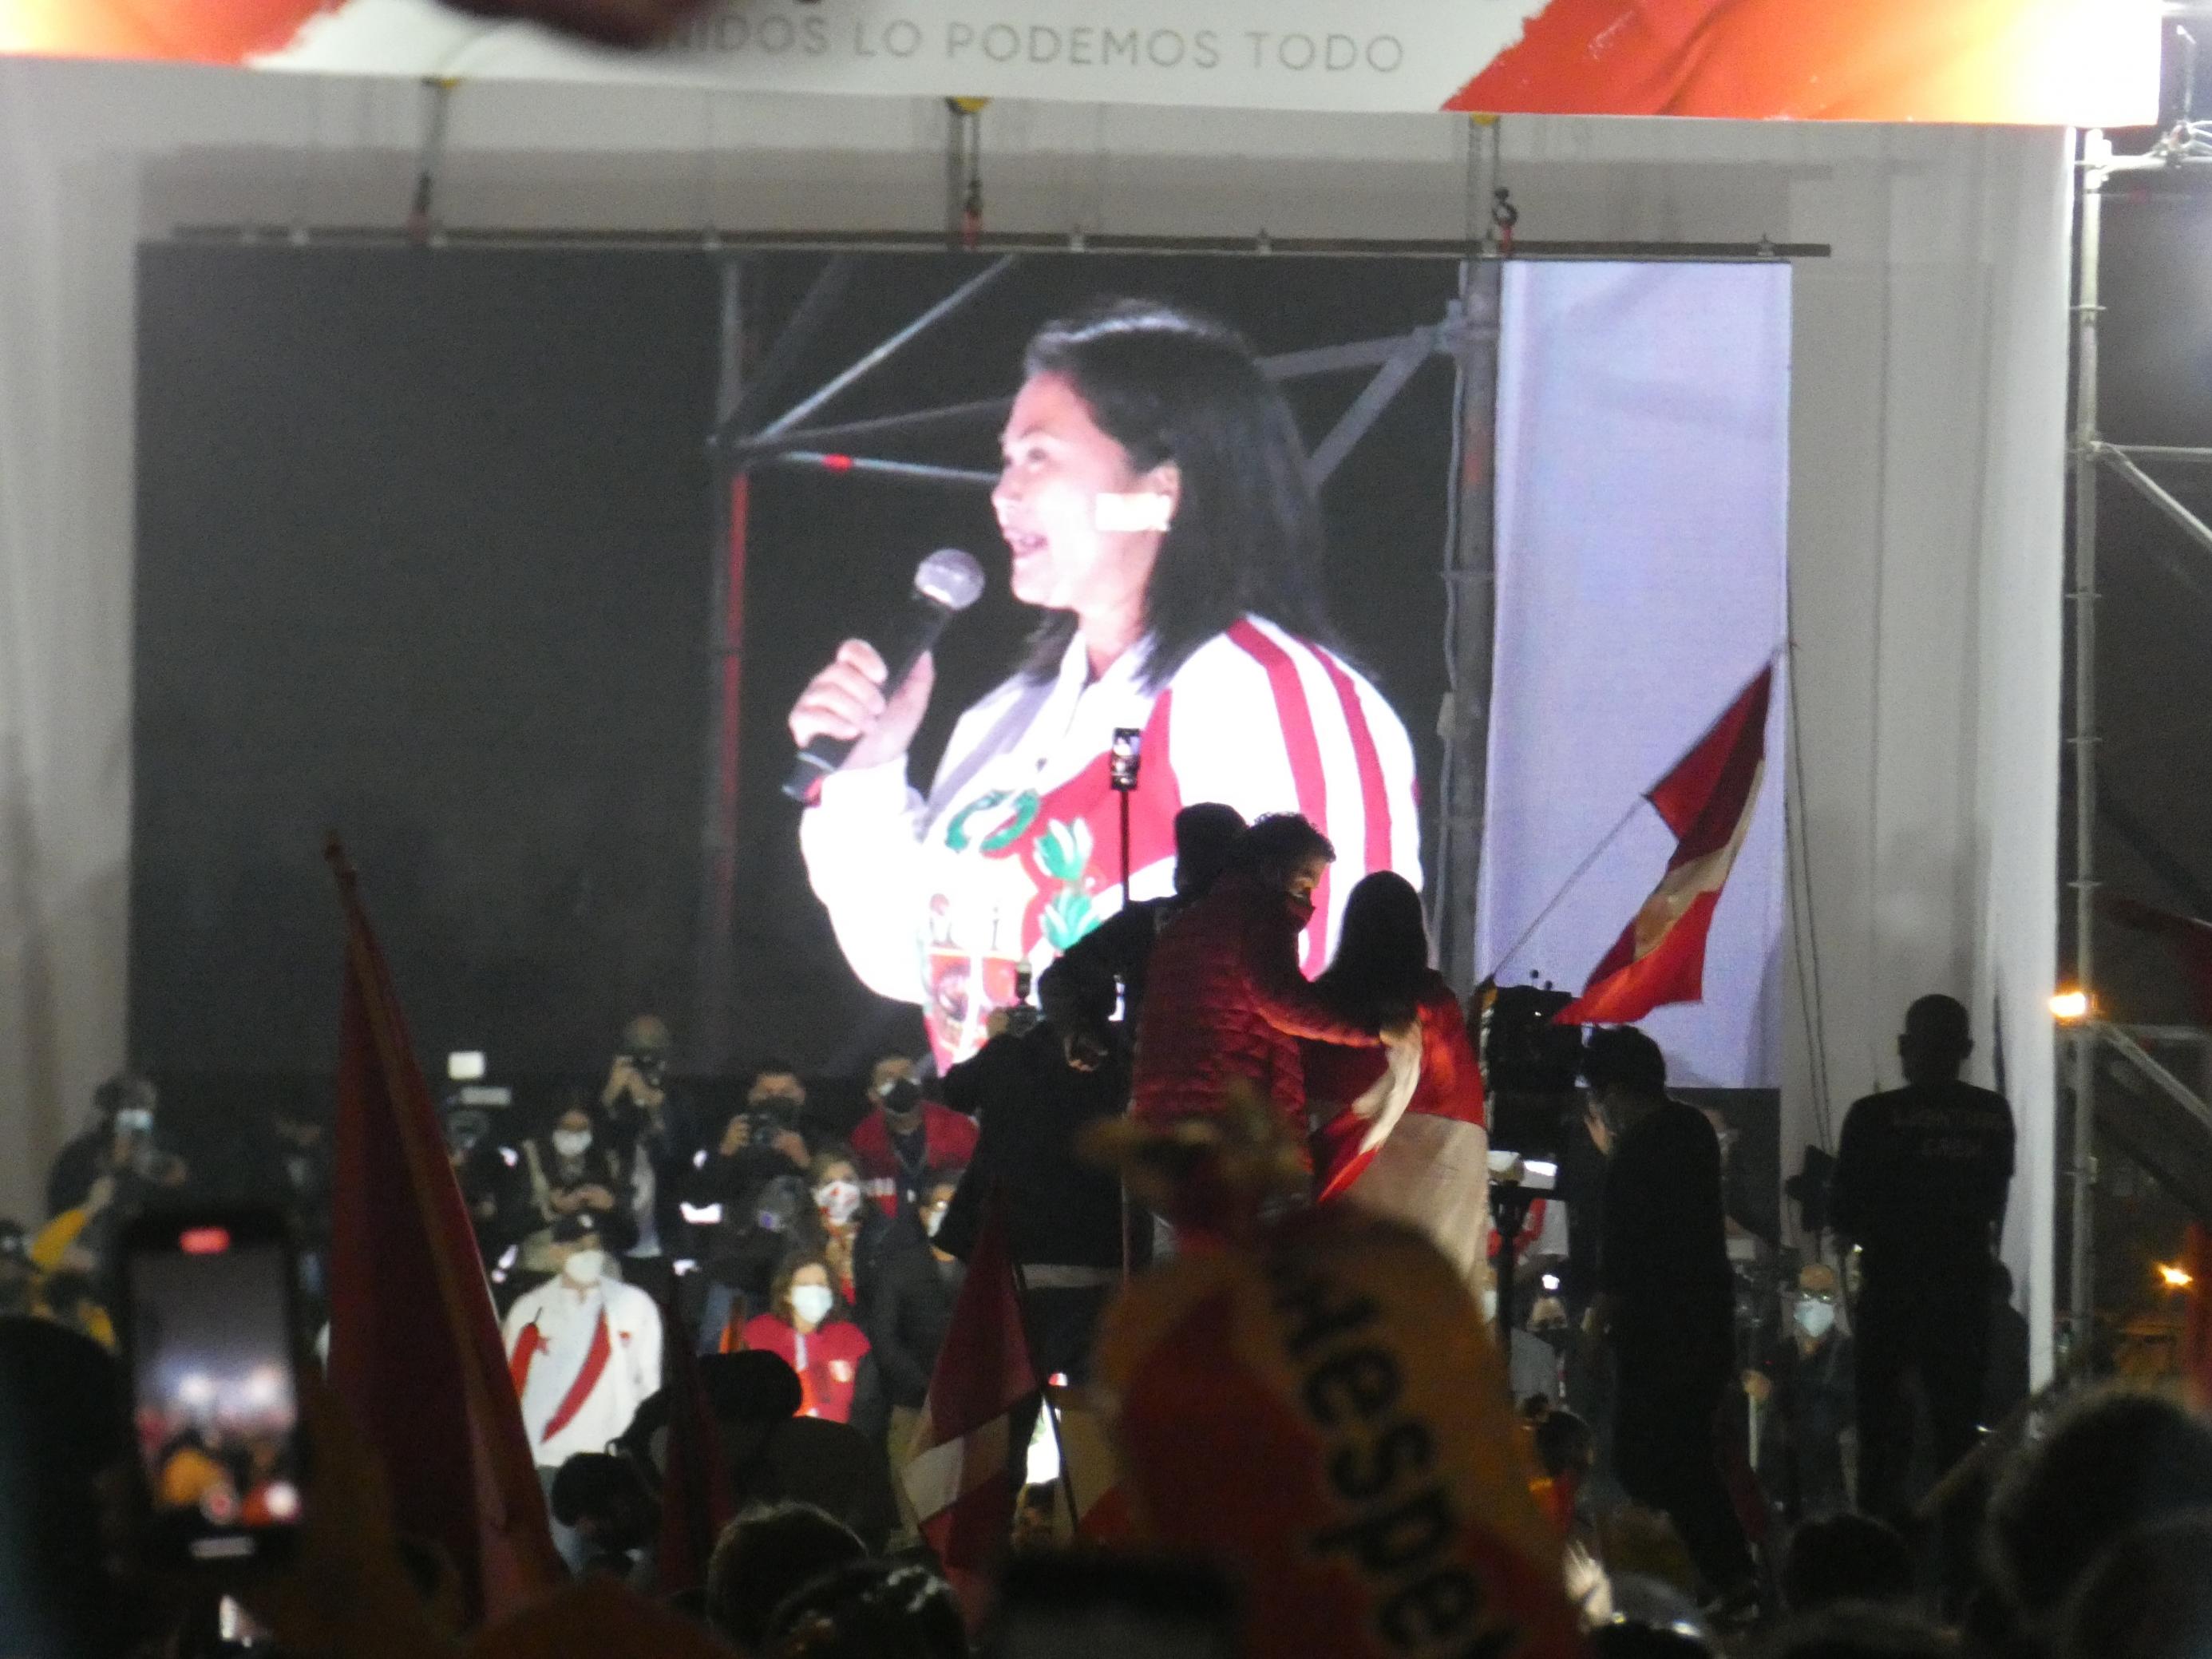 Nacht. Auf einem grossen Bildschirm erscheint eine 46-jährige Frau, schwarze Haare, asiatisches Gesicht, weisse Jacke, spricht ins Mikrofon zu der Menge, die vor ihr an der Bühne zujubelt.